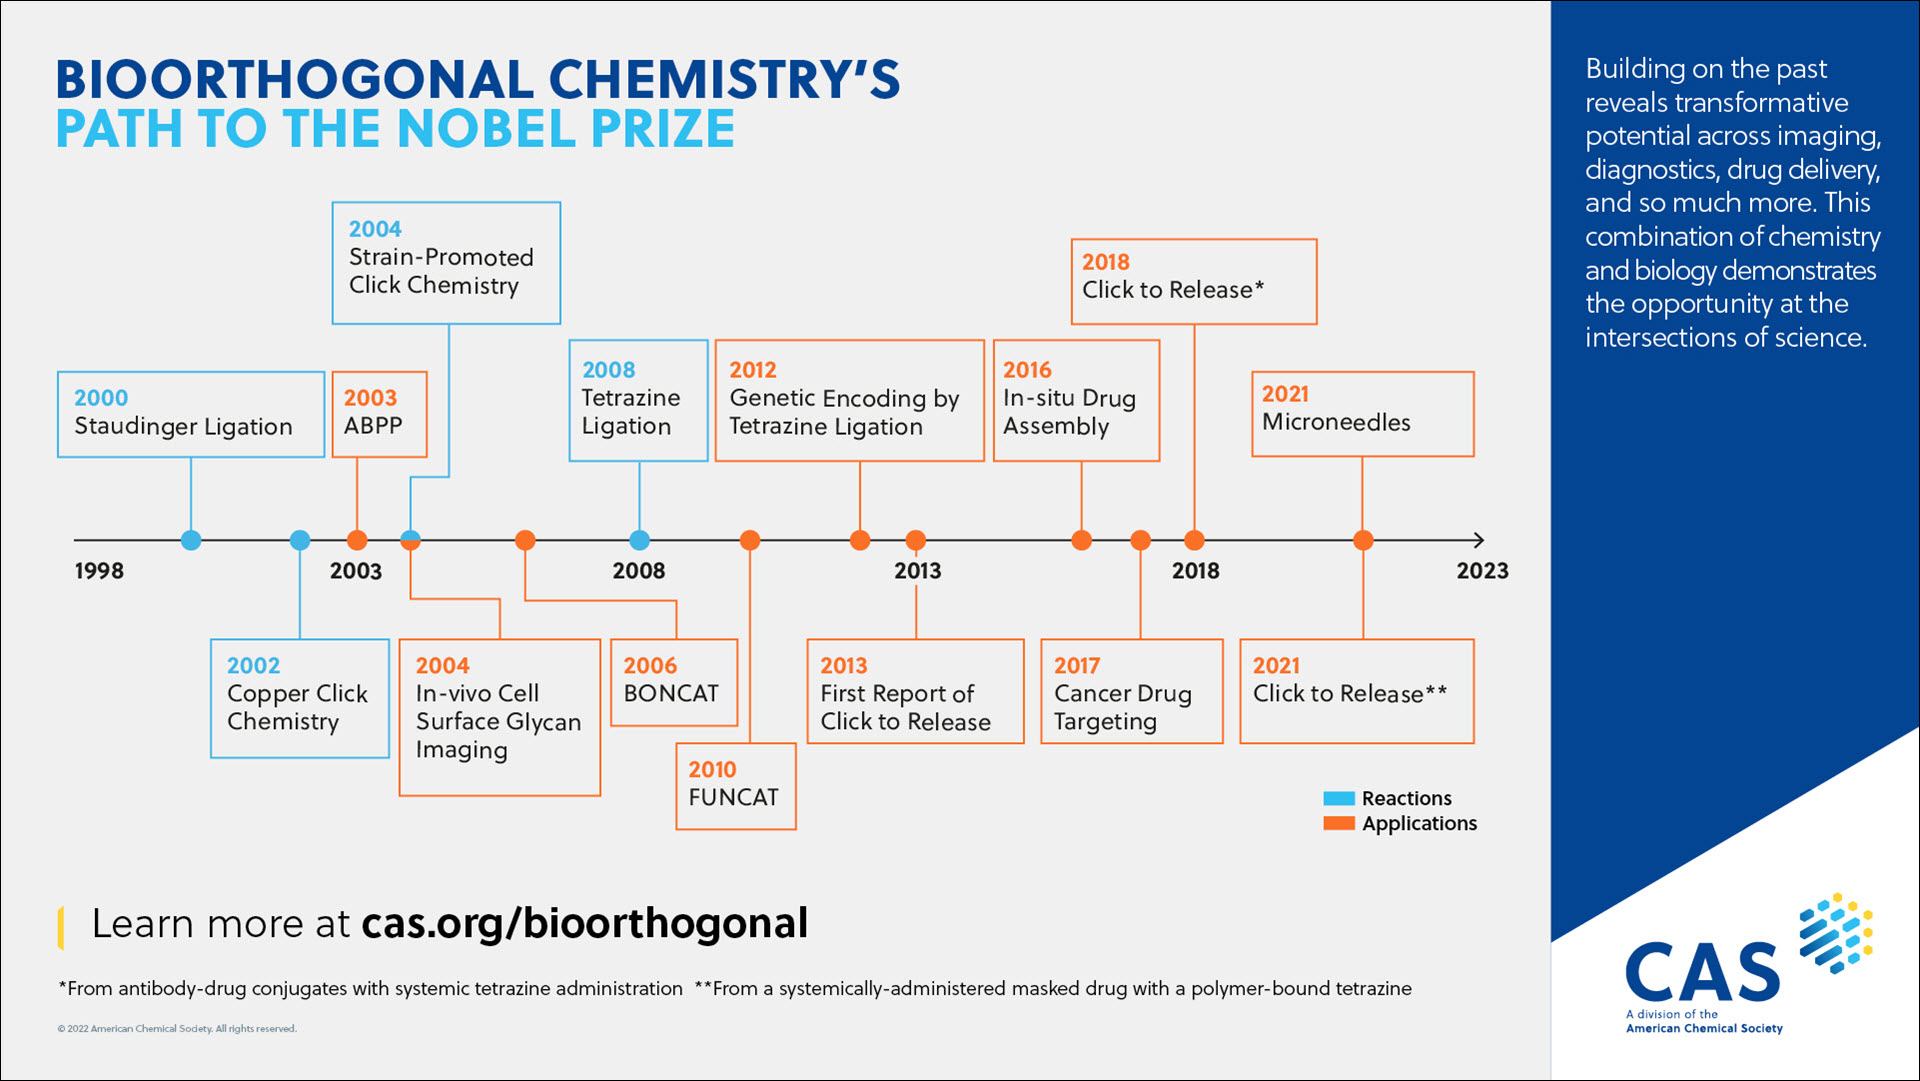 Cronología de la química bioortogonal